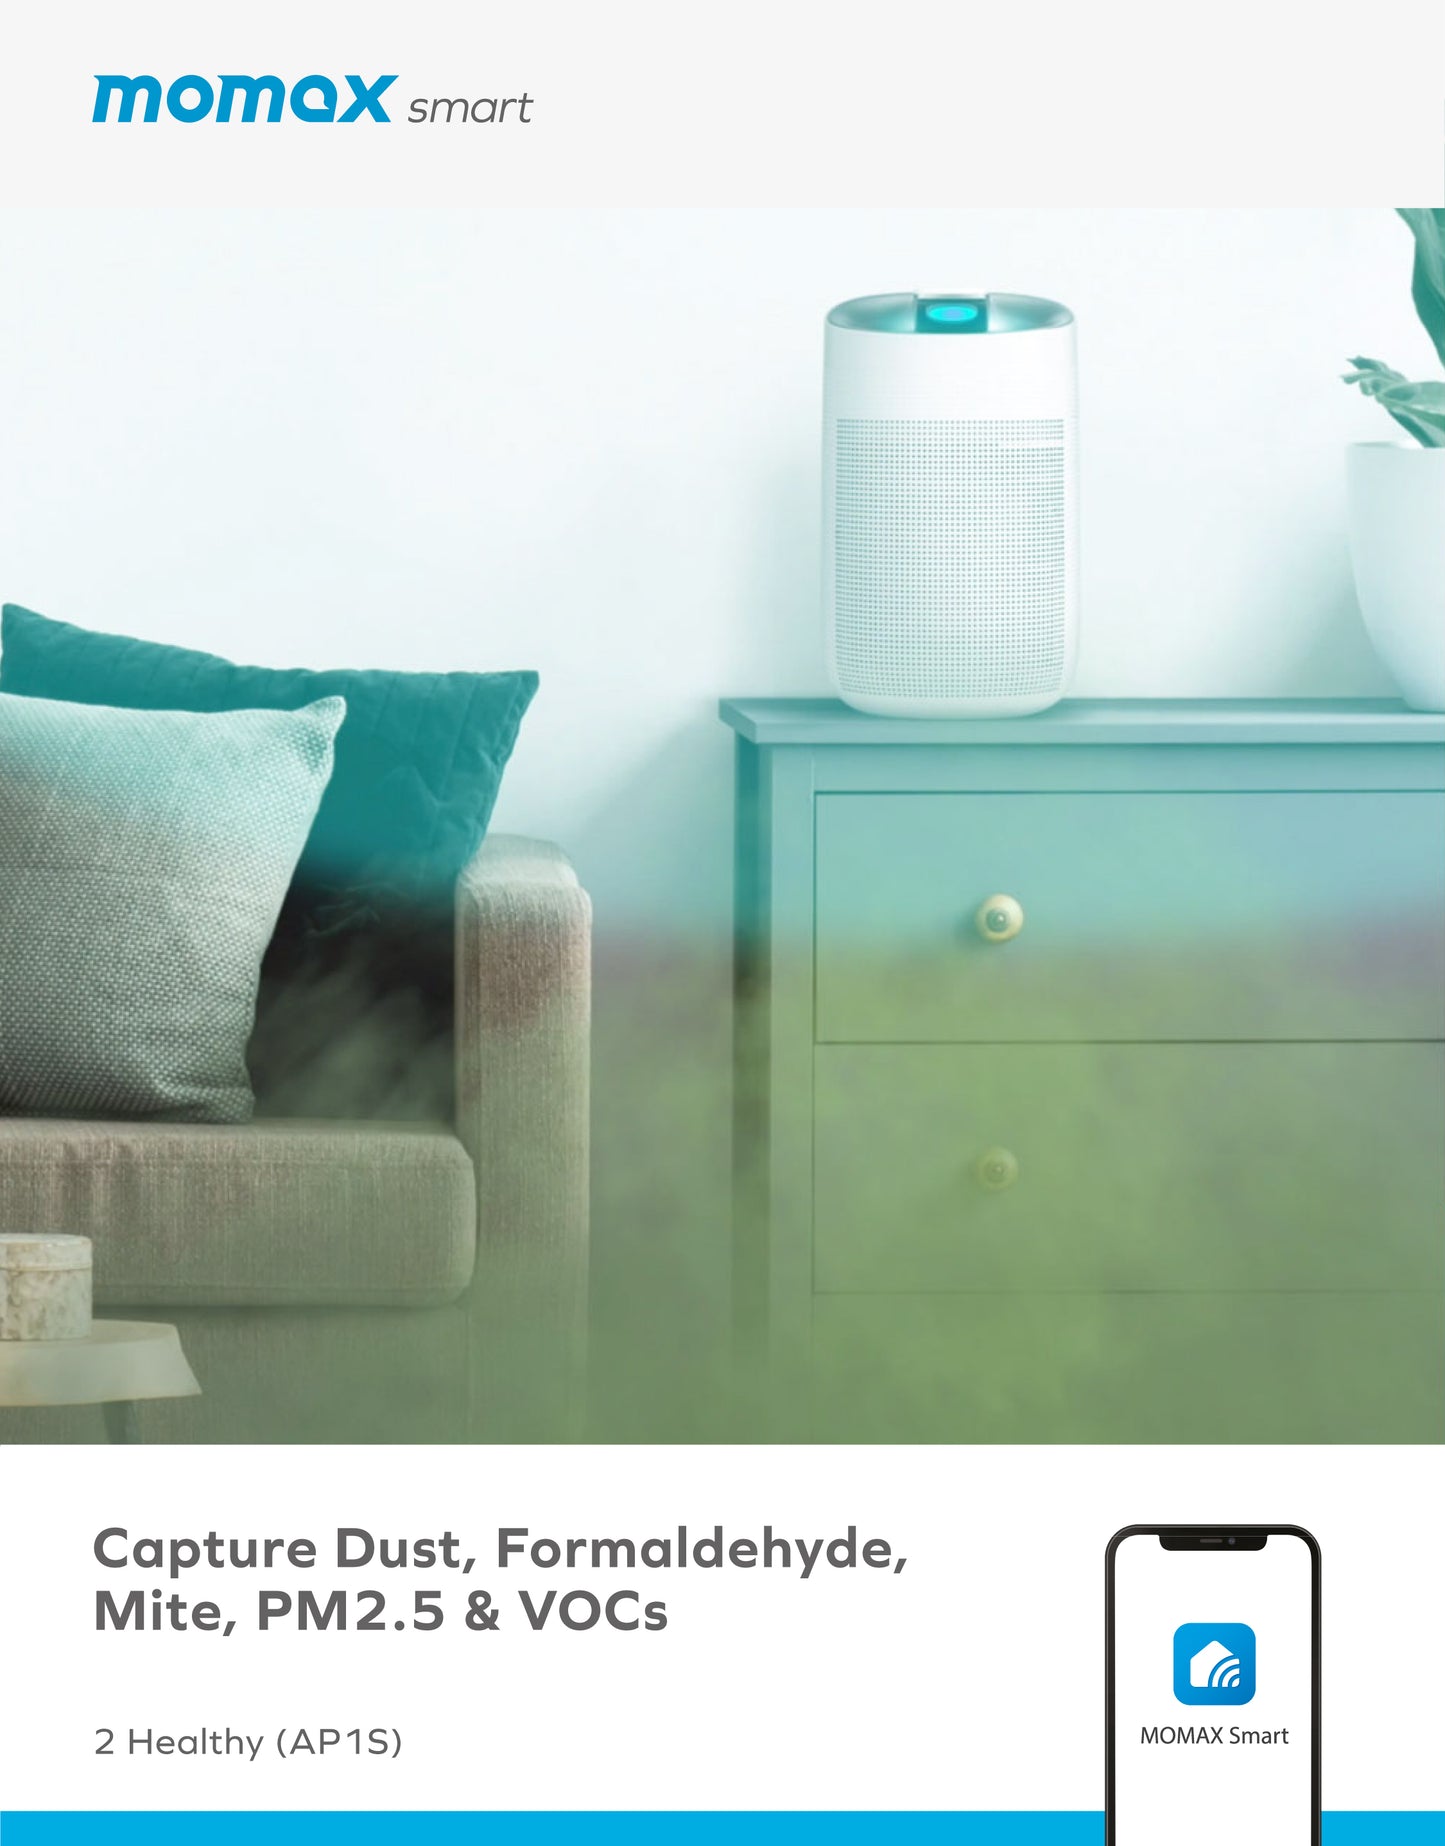 2 Healthy IoT Air Purifying & Dehumidifier (AP1S) -- Air Purifier